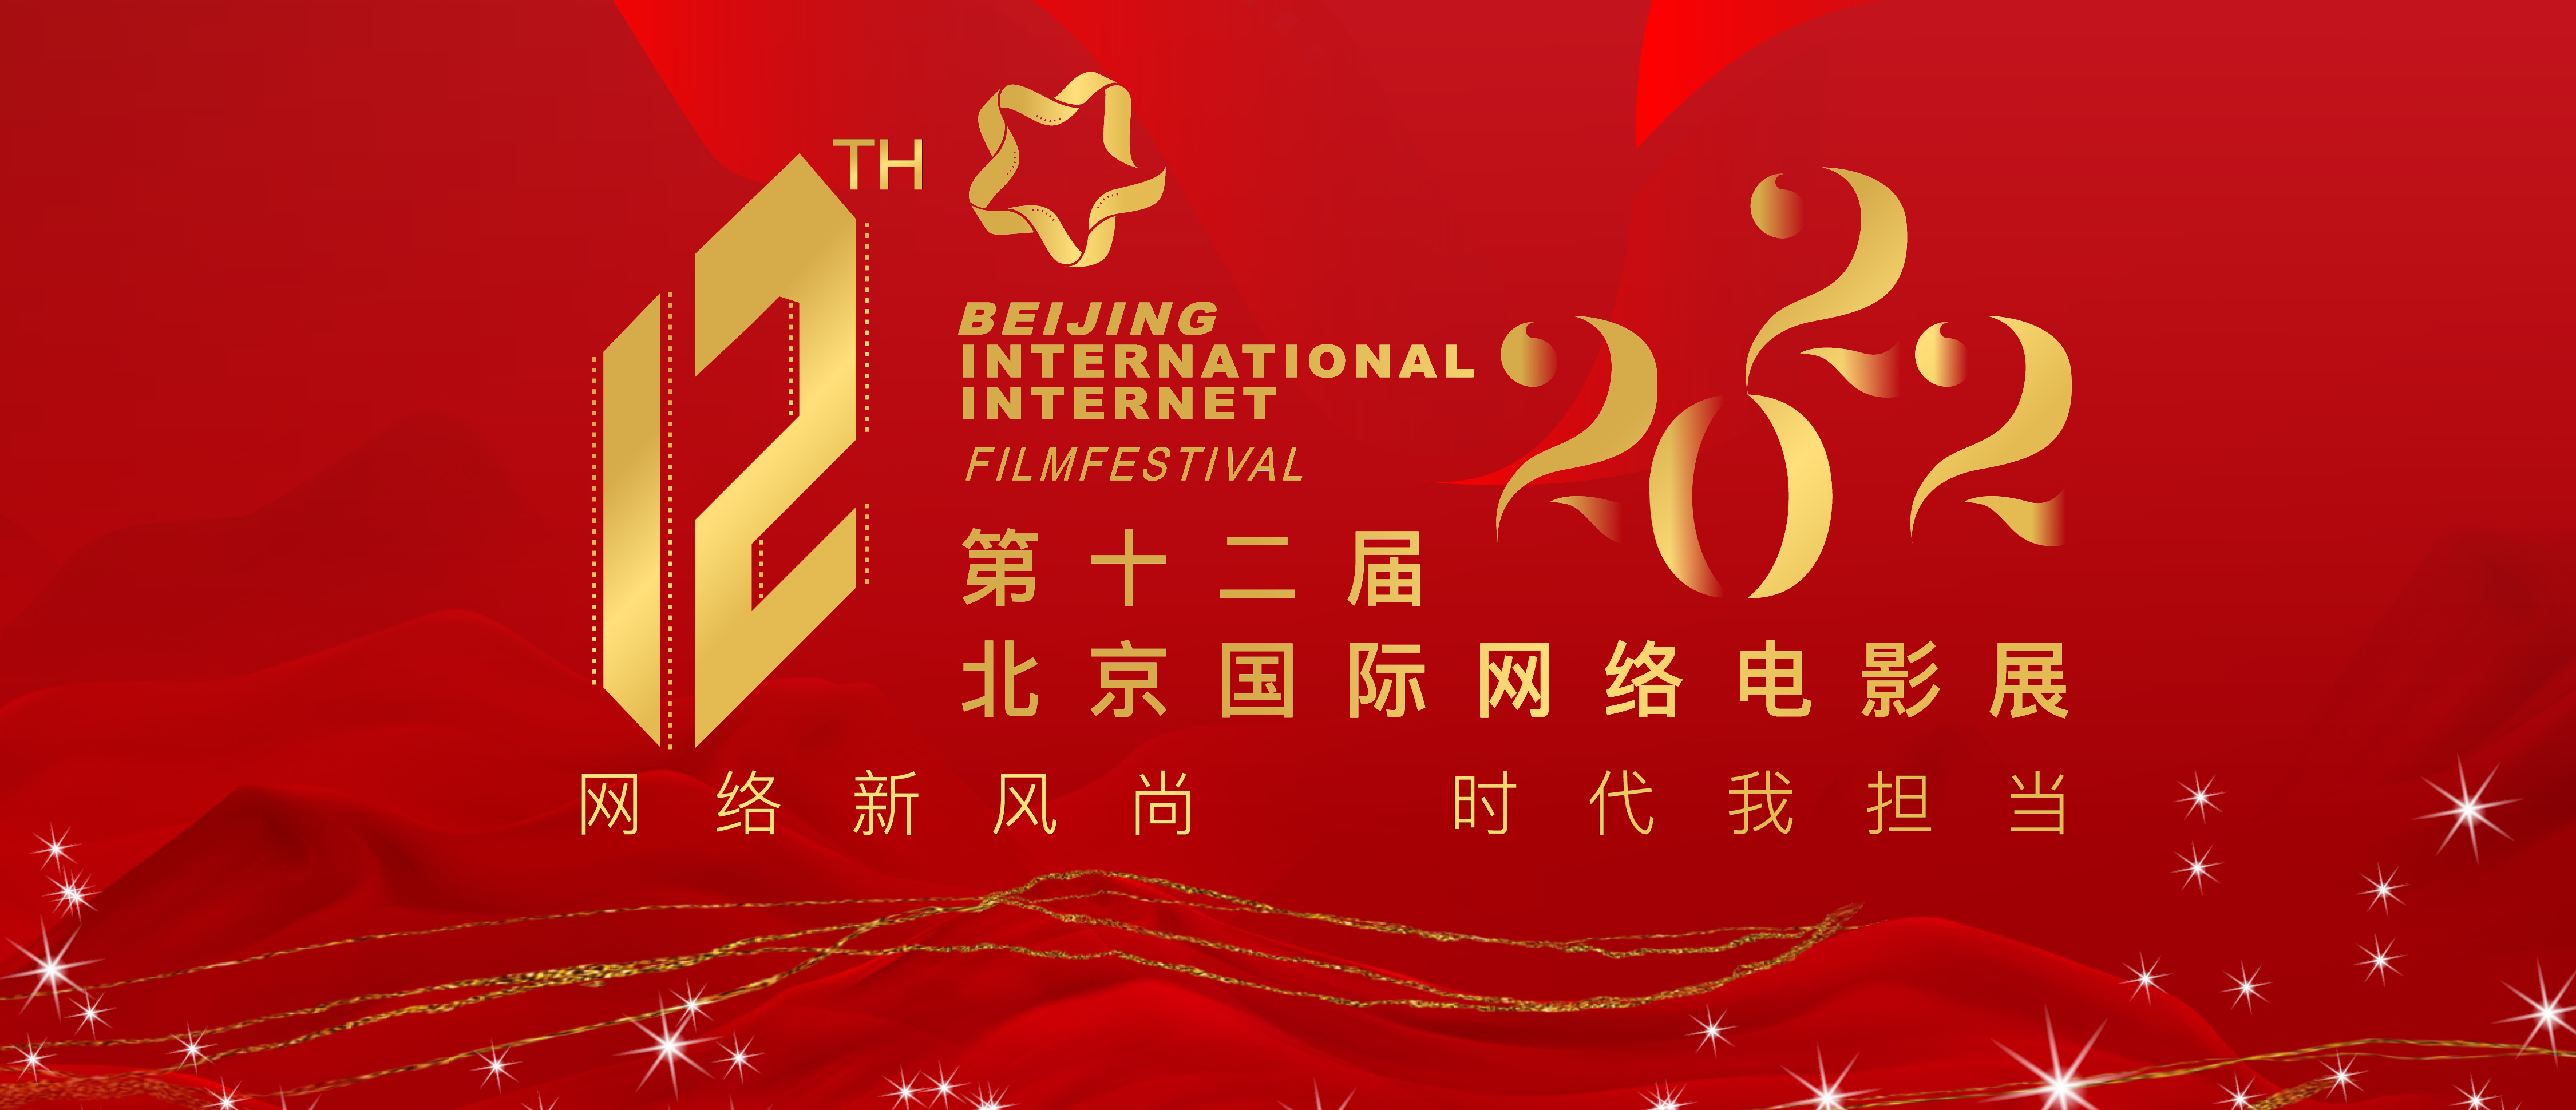 【第一批入围作品名单正式公布】第12届北京国际网络电影展